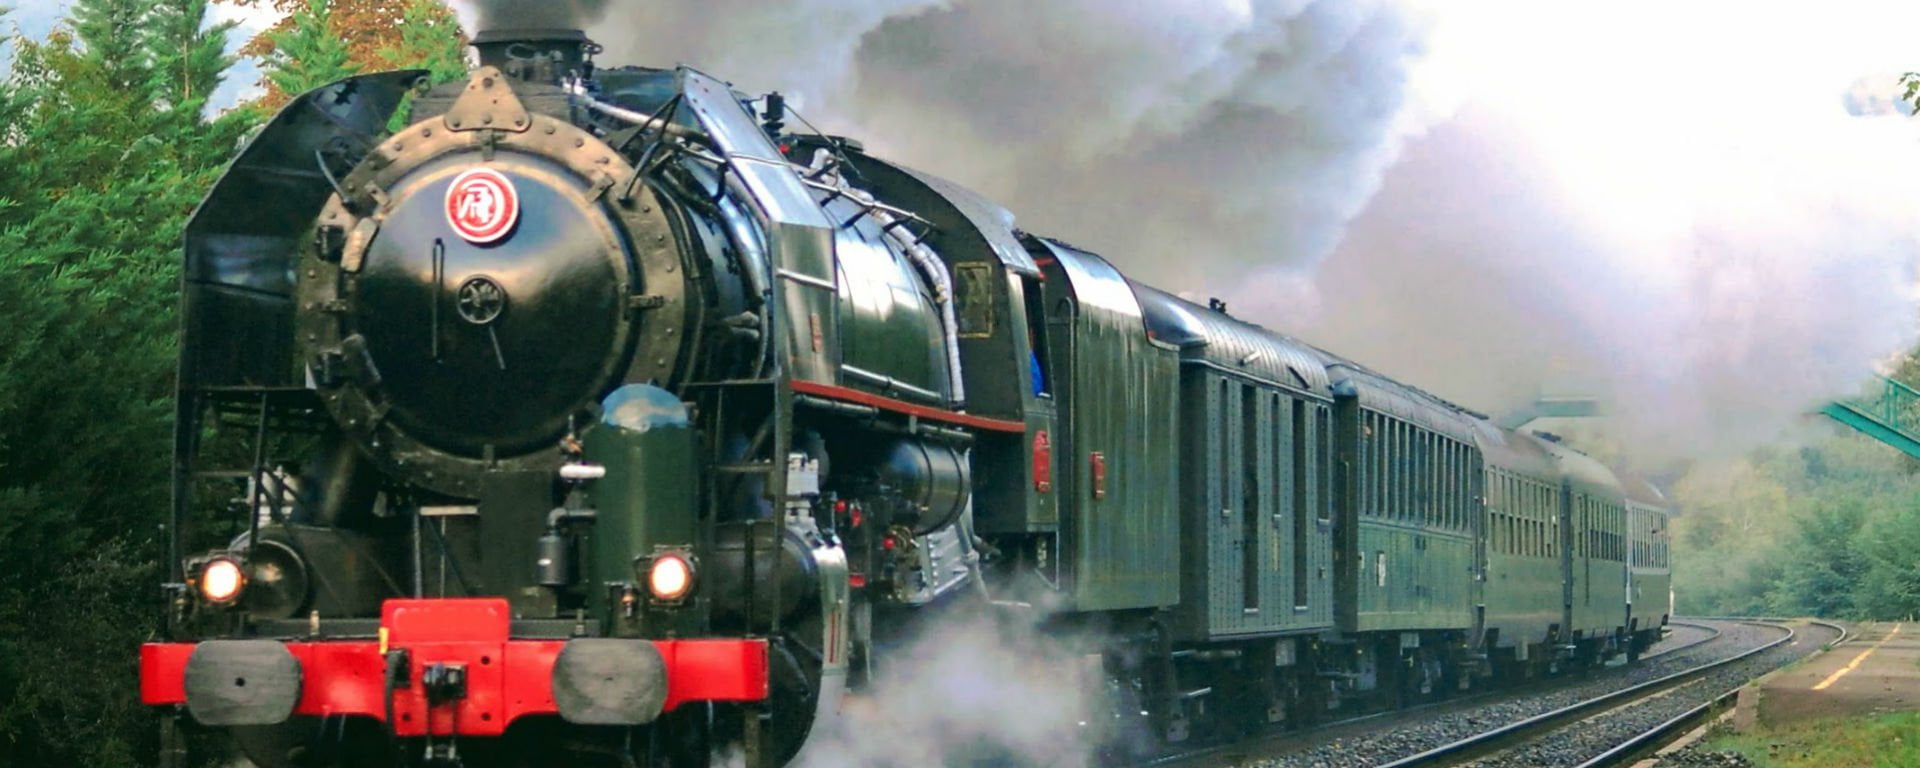 Trains vapeurs et chemins de fer